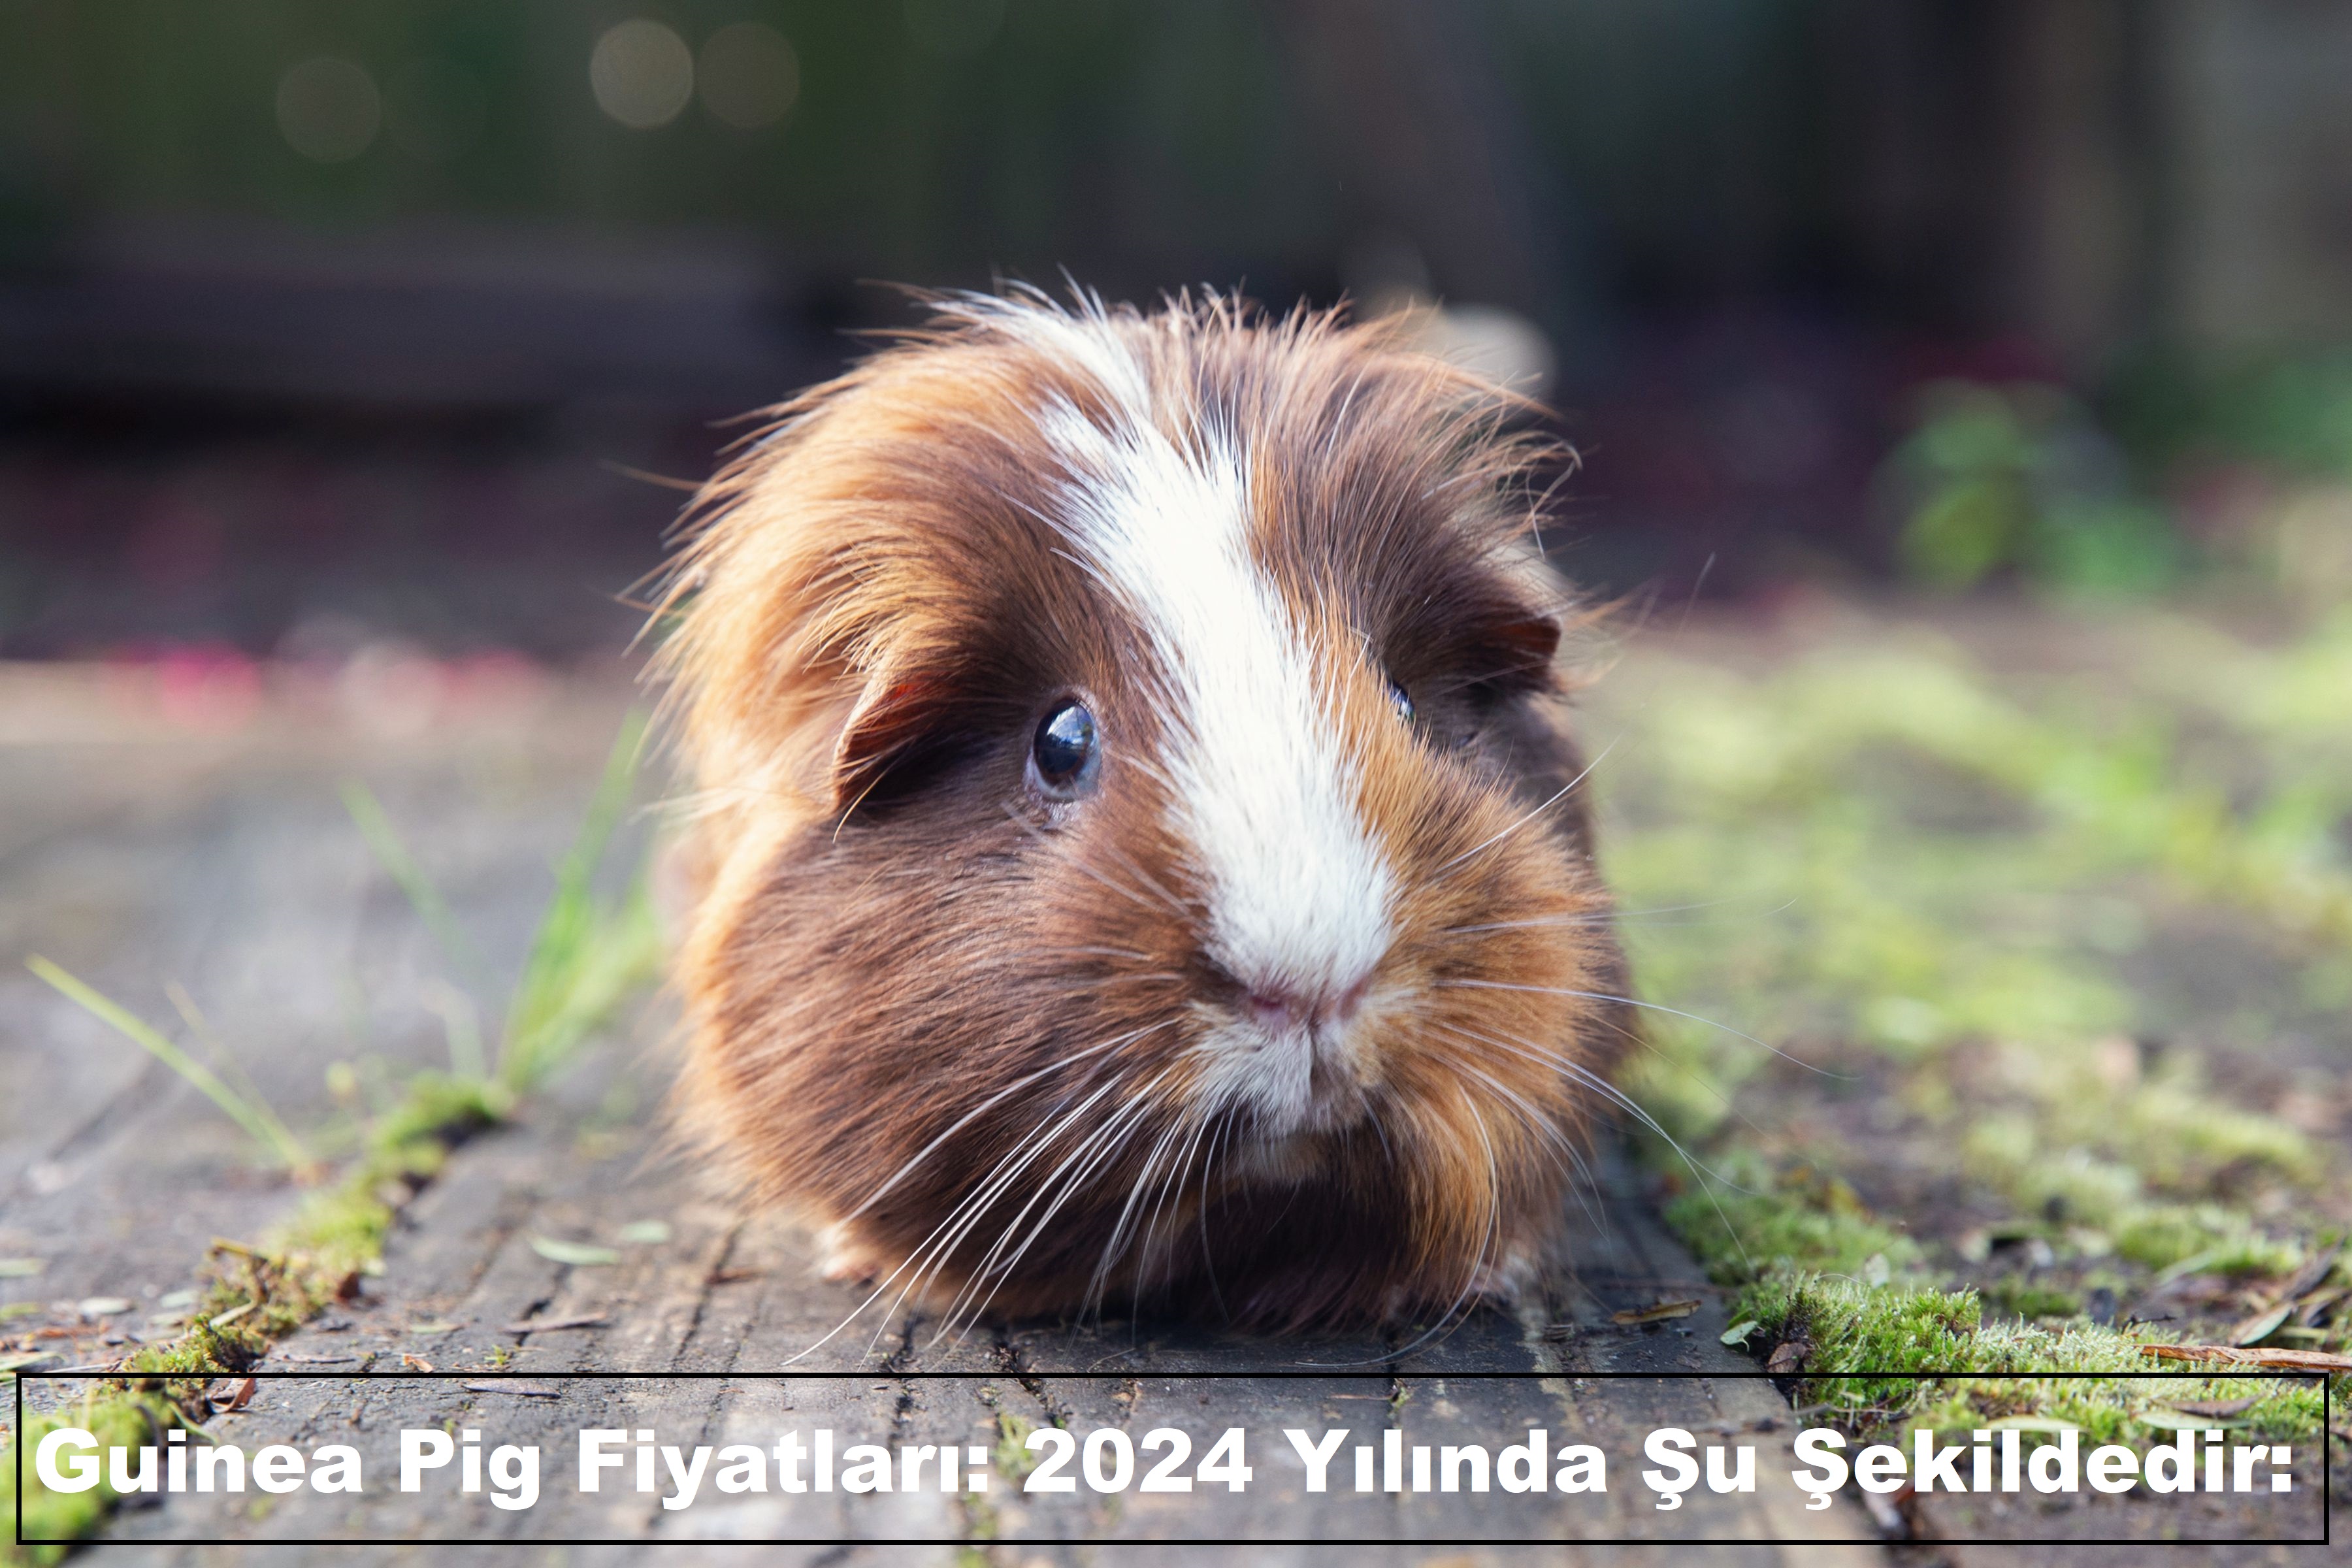 Guinea Pig Fiyatları: 2024 Yılında Şu Şekildedir: